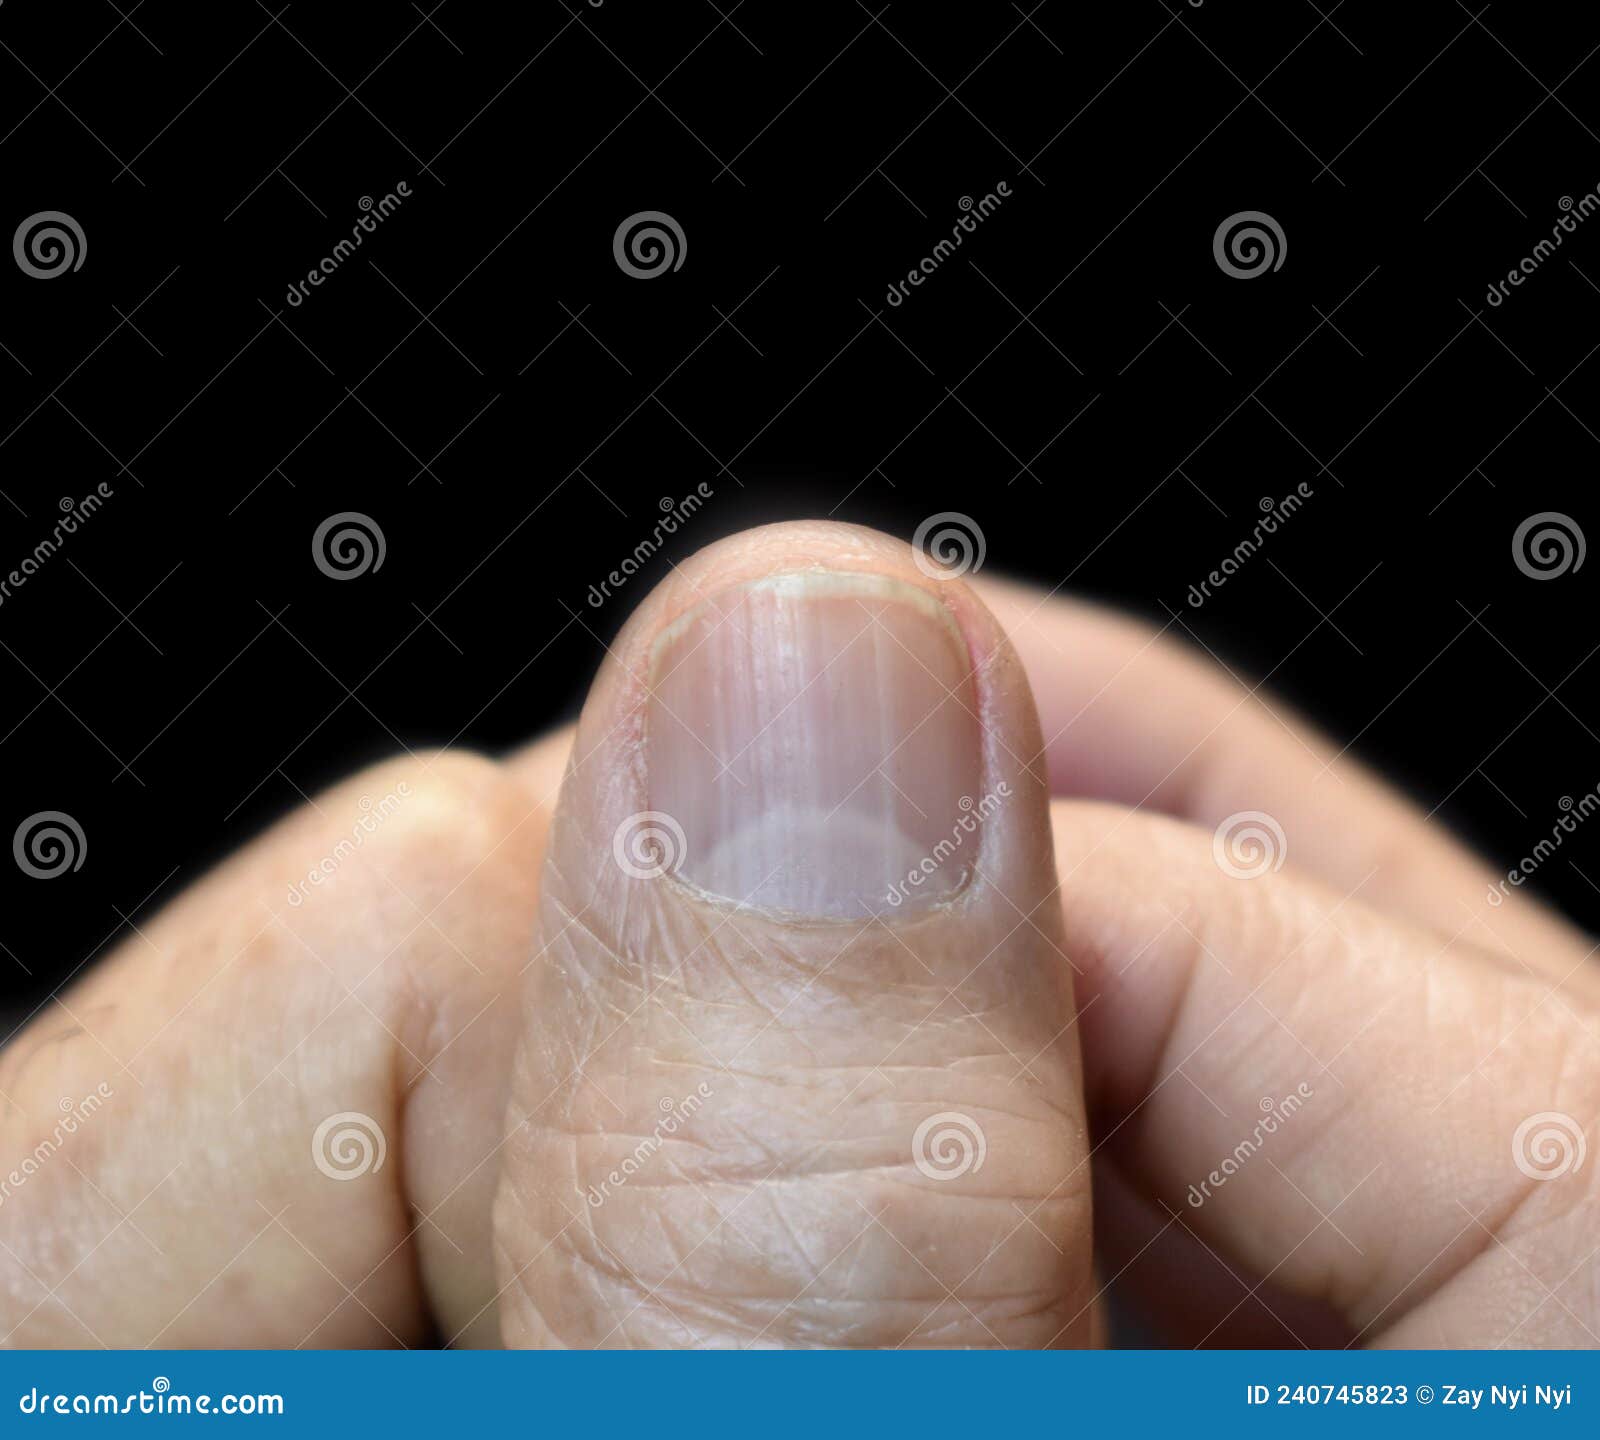 D e r m o s c opy of the nail plate showing l o n g i t u d i n a l... |  Download Scientific Diagram